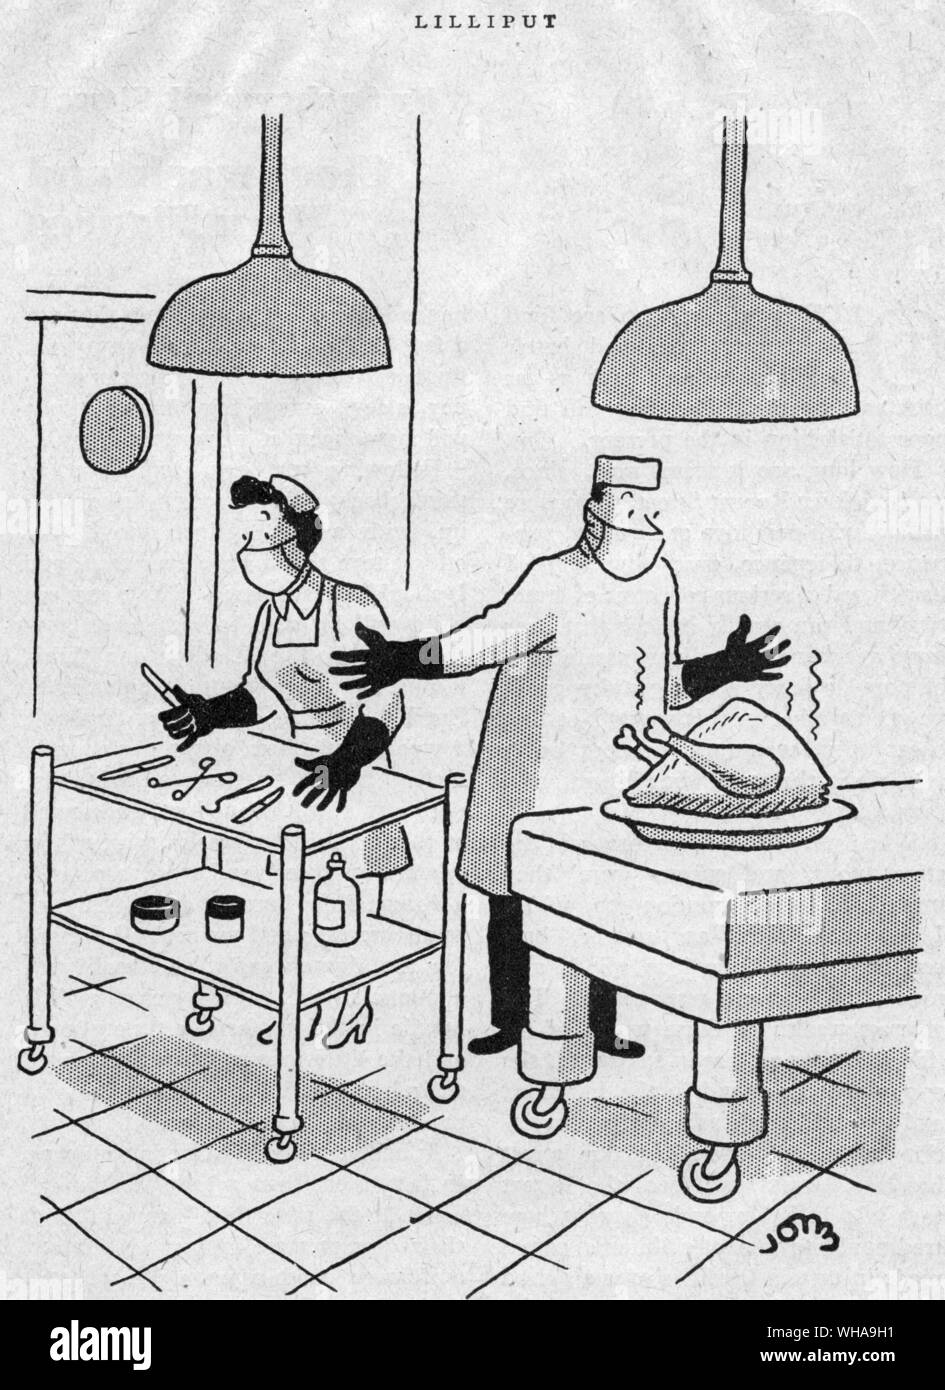 Um die Wahrheit zu sagen ich bin einfach nur Angst vor dem Abwaschen!. Lilliput Januar 1948 Stockfoto